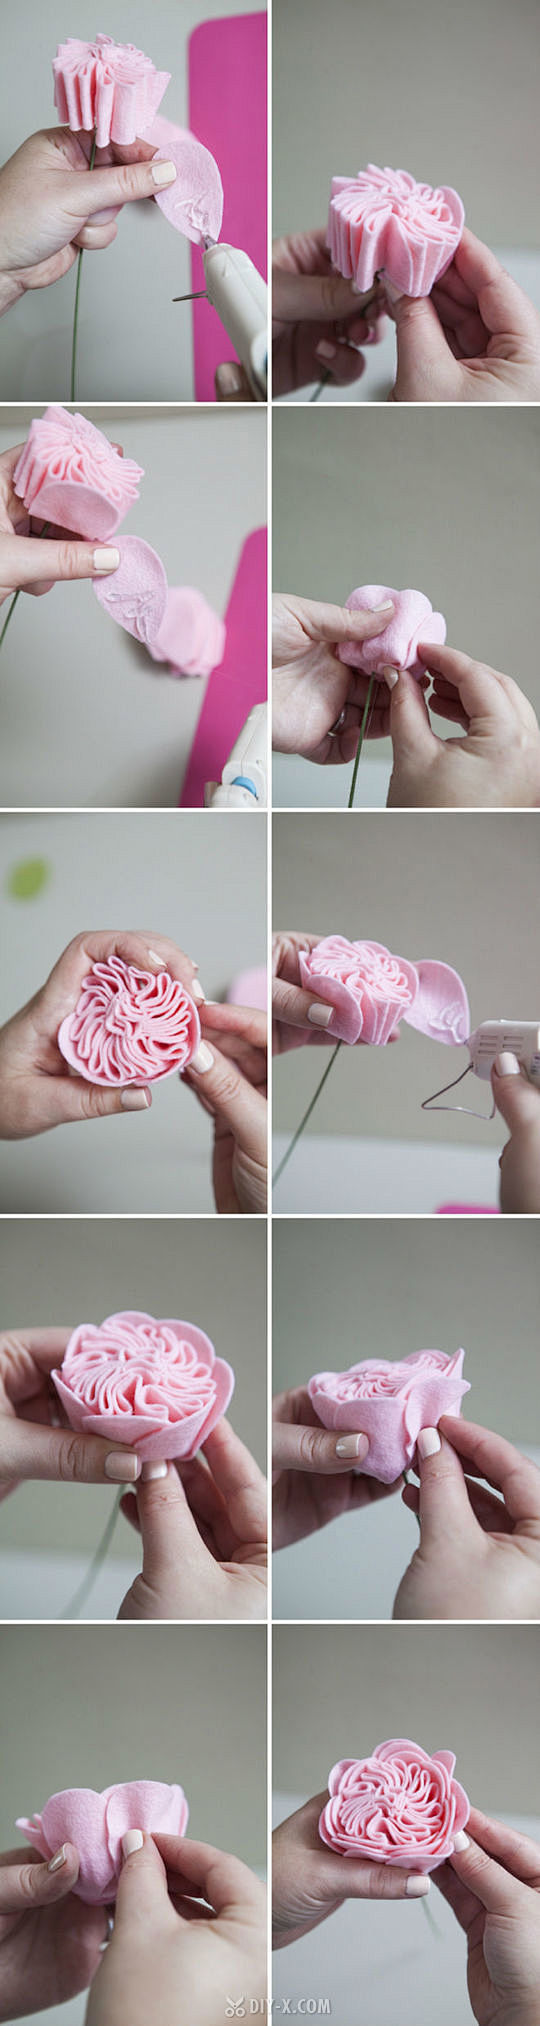 #手工DIY# 羊毛毡卷心白玫瑰插瓶制作...